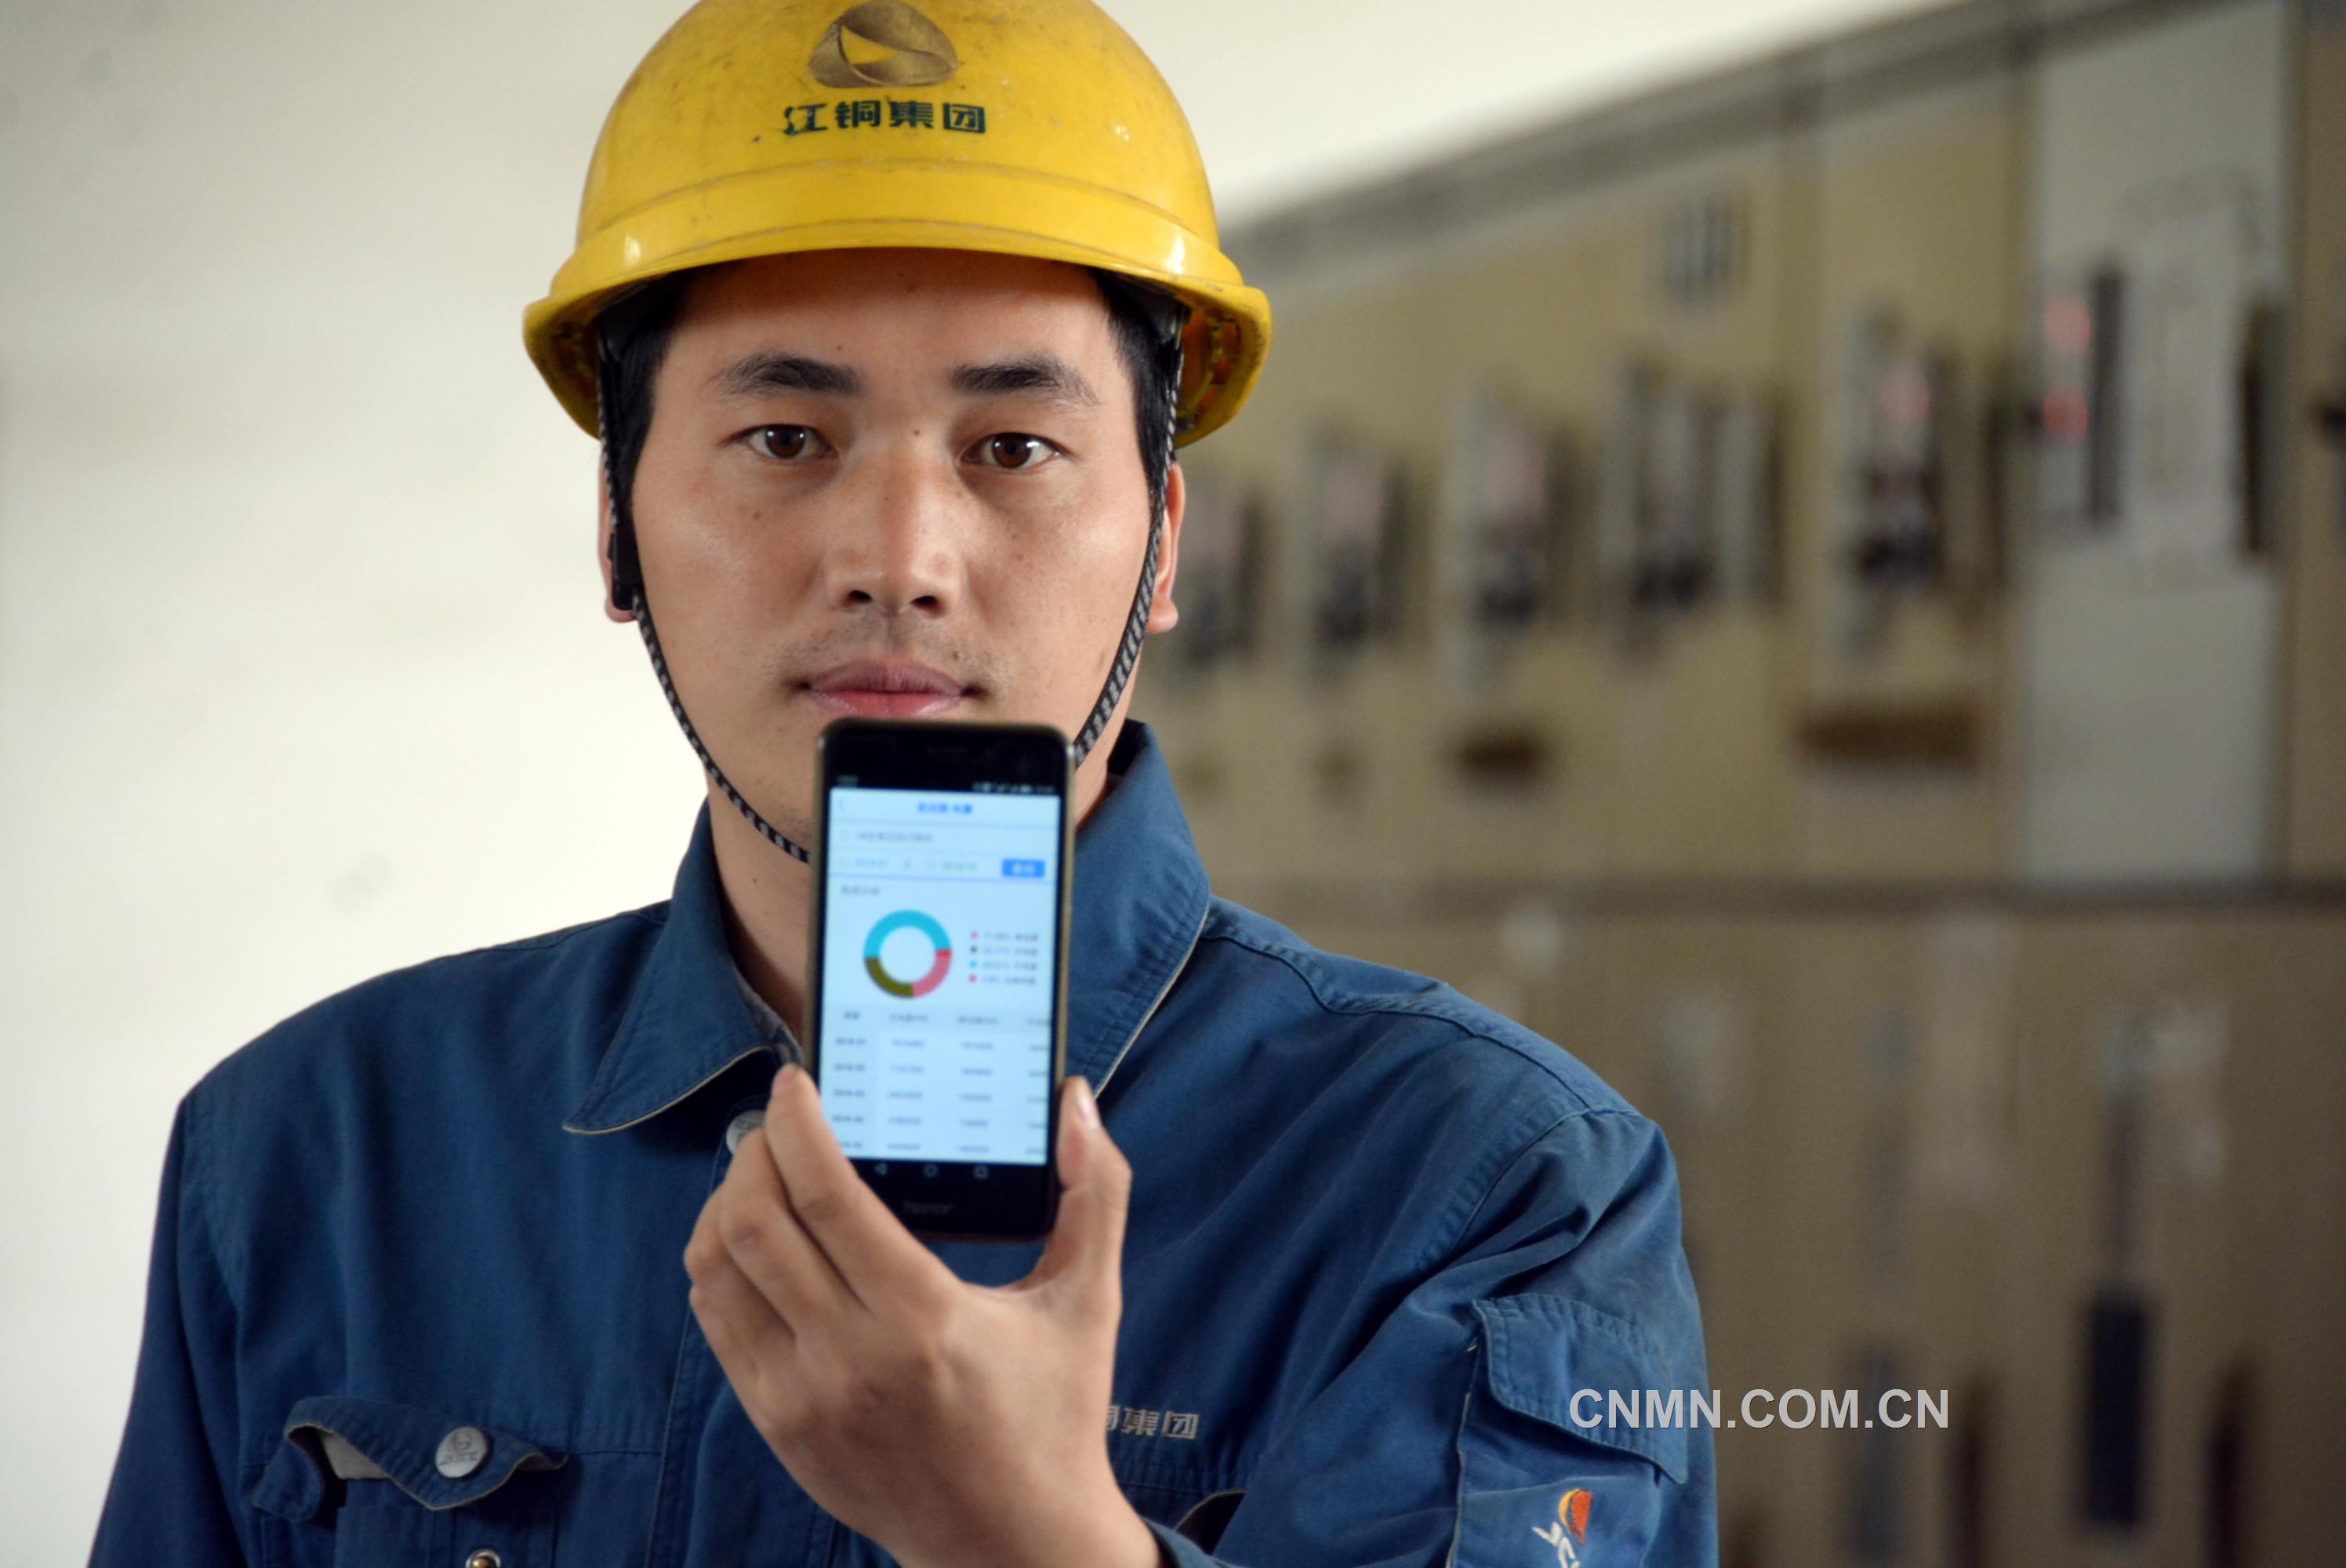 如今在江西铜业集团有限公司铅锌公司设备部，职工们的手机多了一项神奇的功能，能够一键掌握配用电设备运行情况，及时发现并快速处置安全隐患。